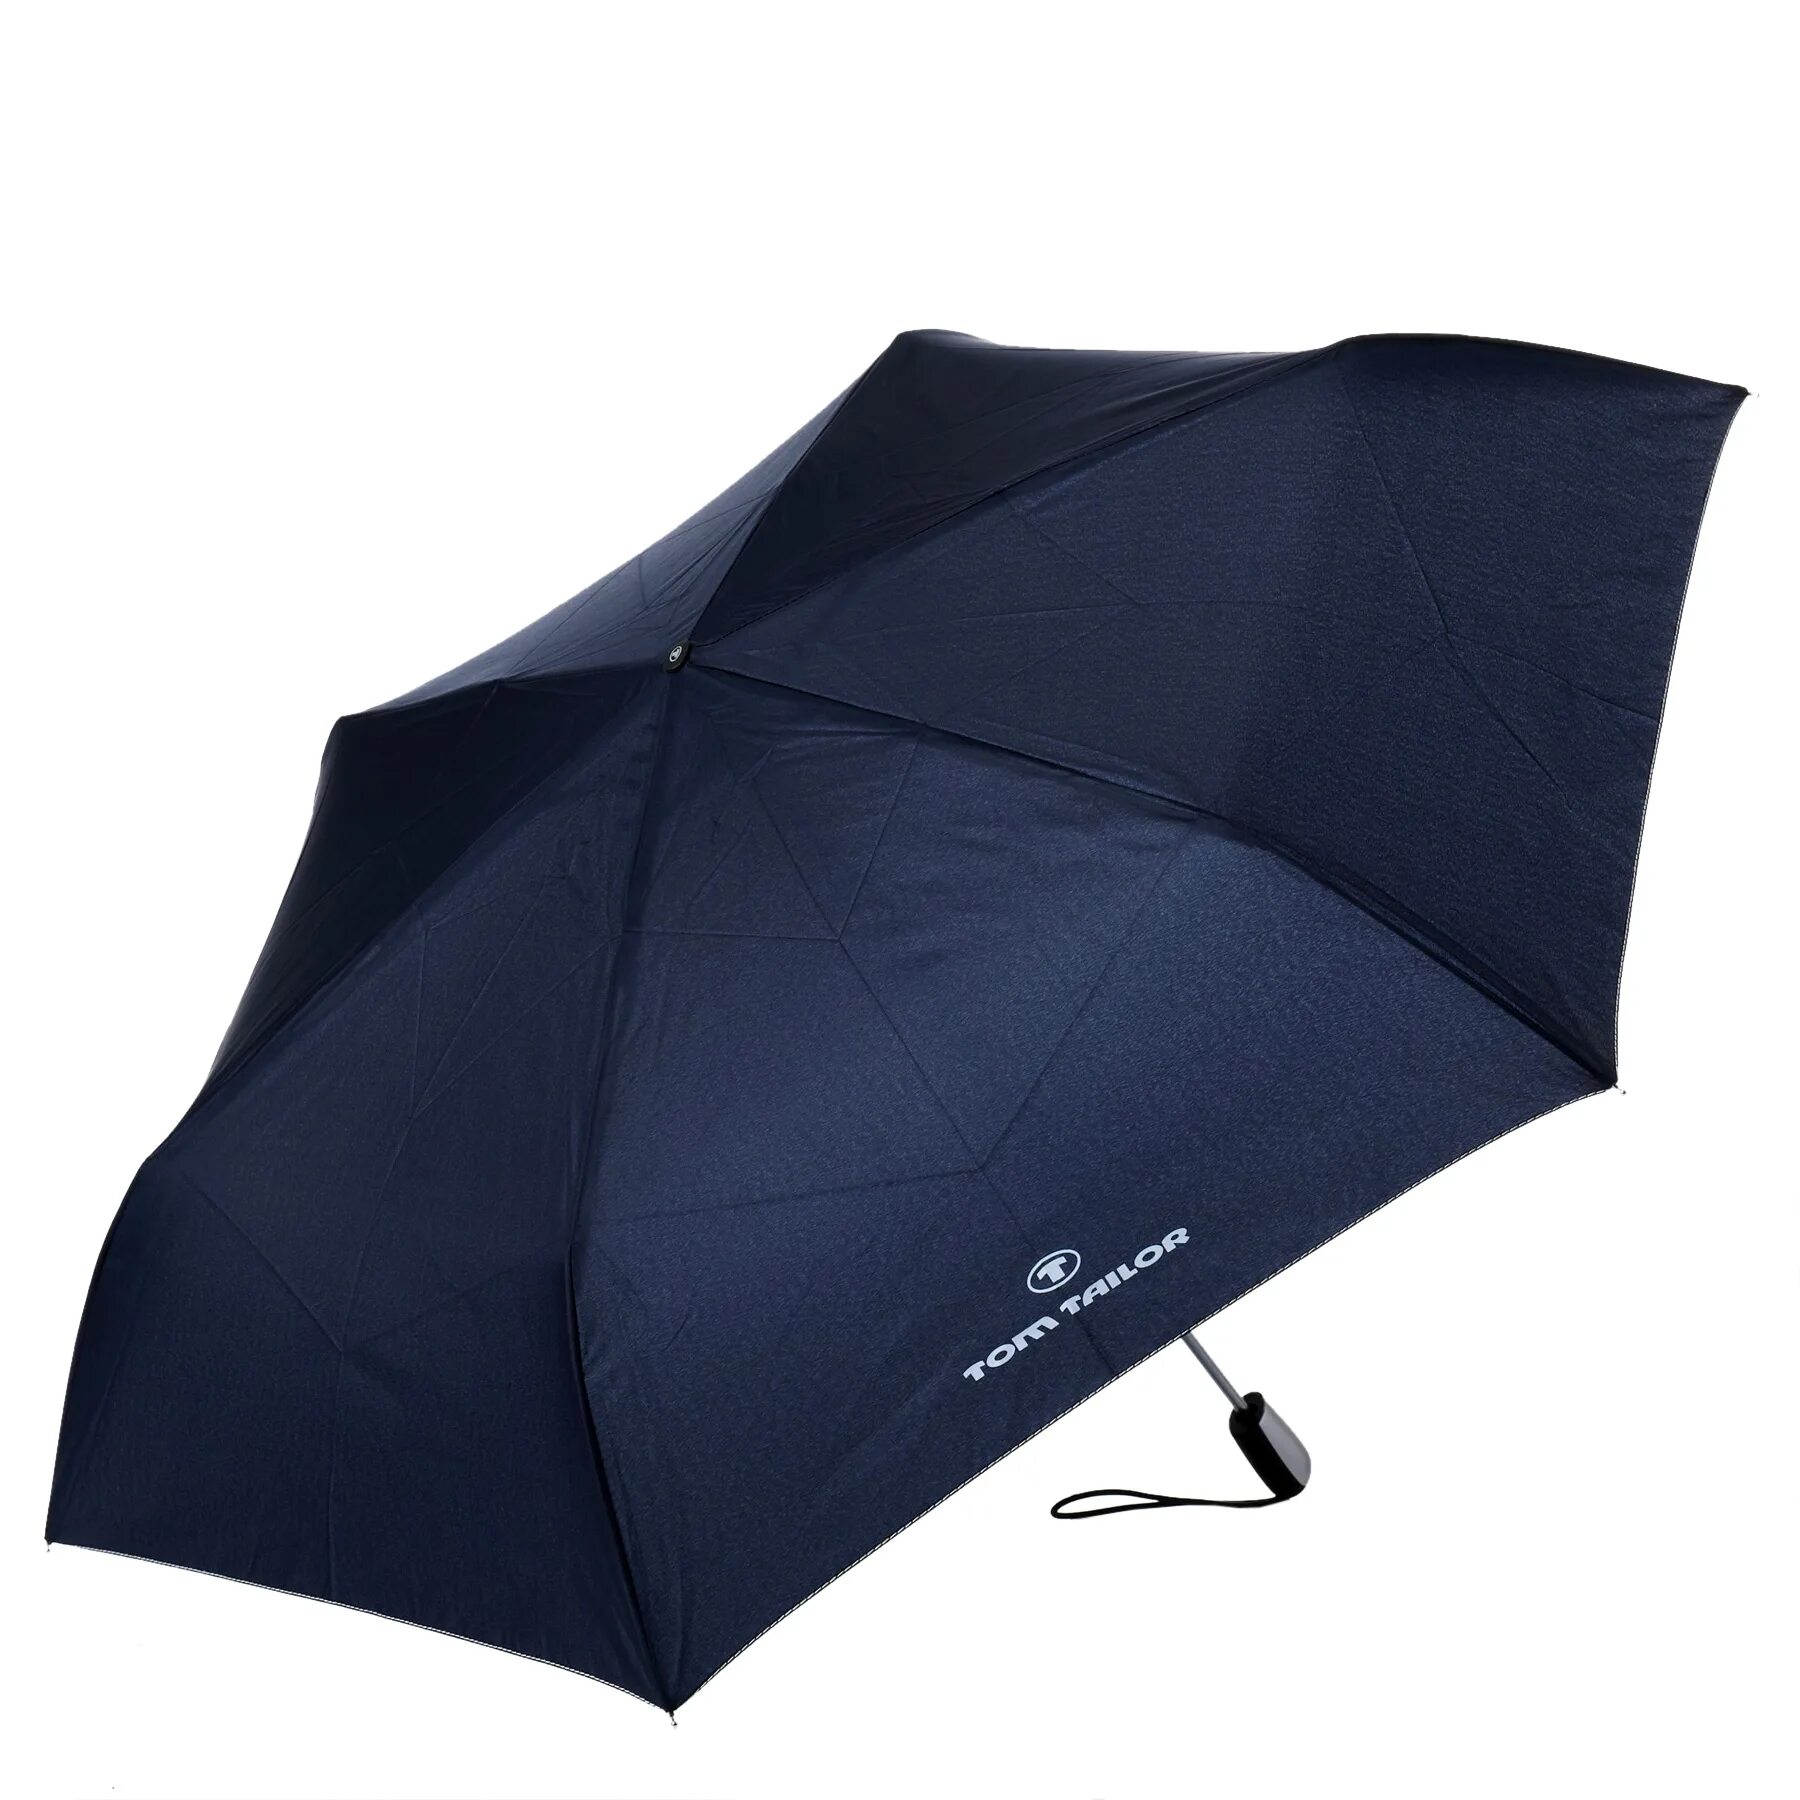 Зонт Renoma GMR/0430b (черный). Зонт Ramuda, CMIH-1703/Navy. Portobello зонт Dune. LG-814в зонт. Зонтик рост